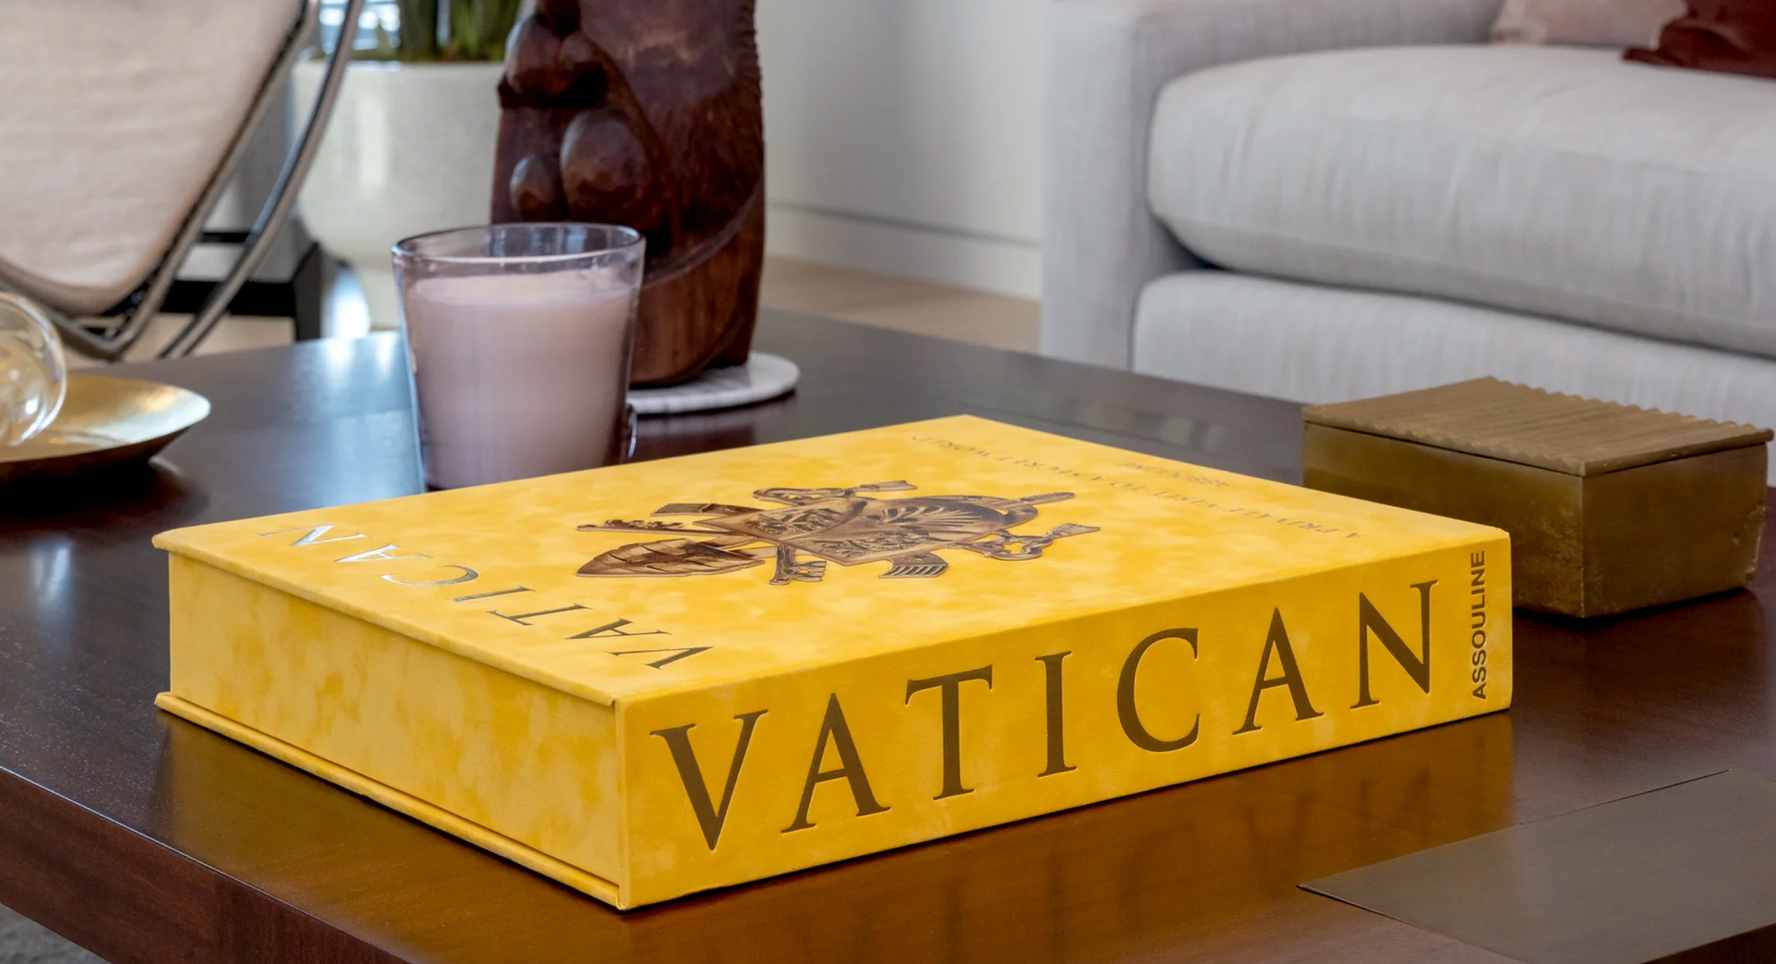 Watykan: Prywatna wizyta w tajemnym świecie